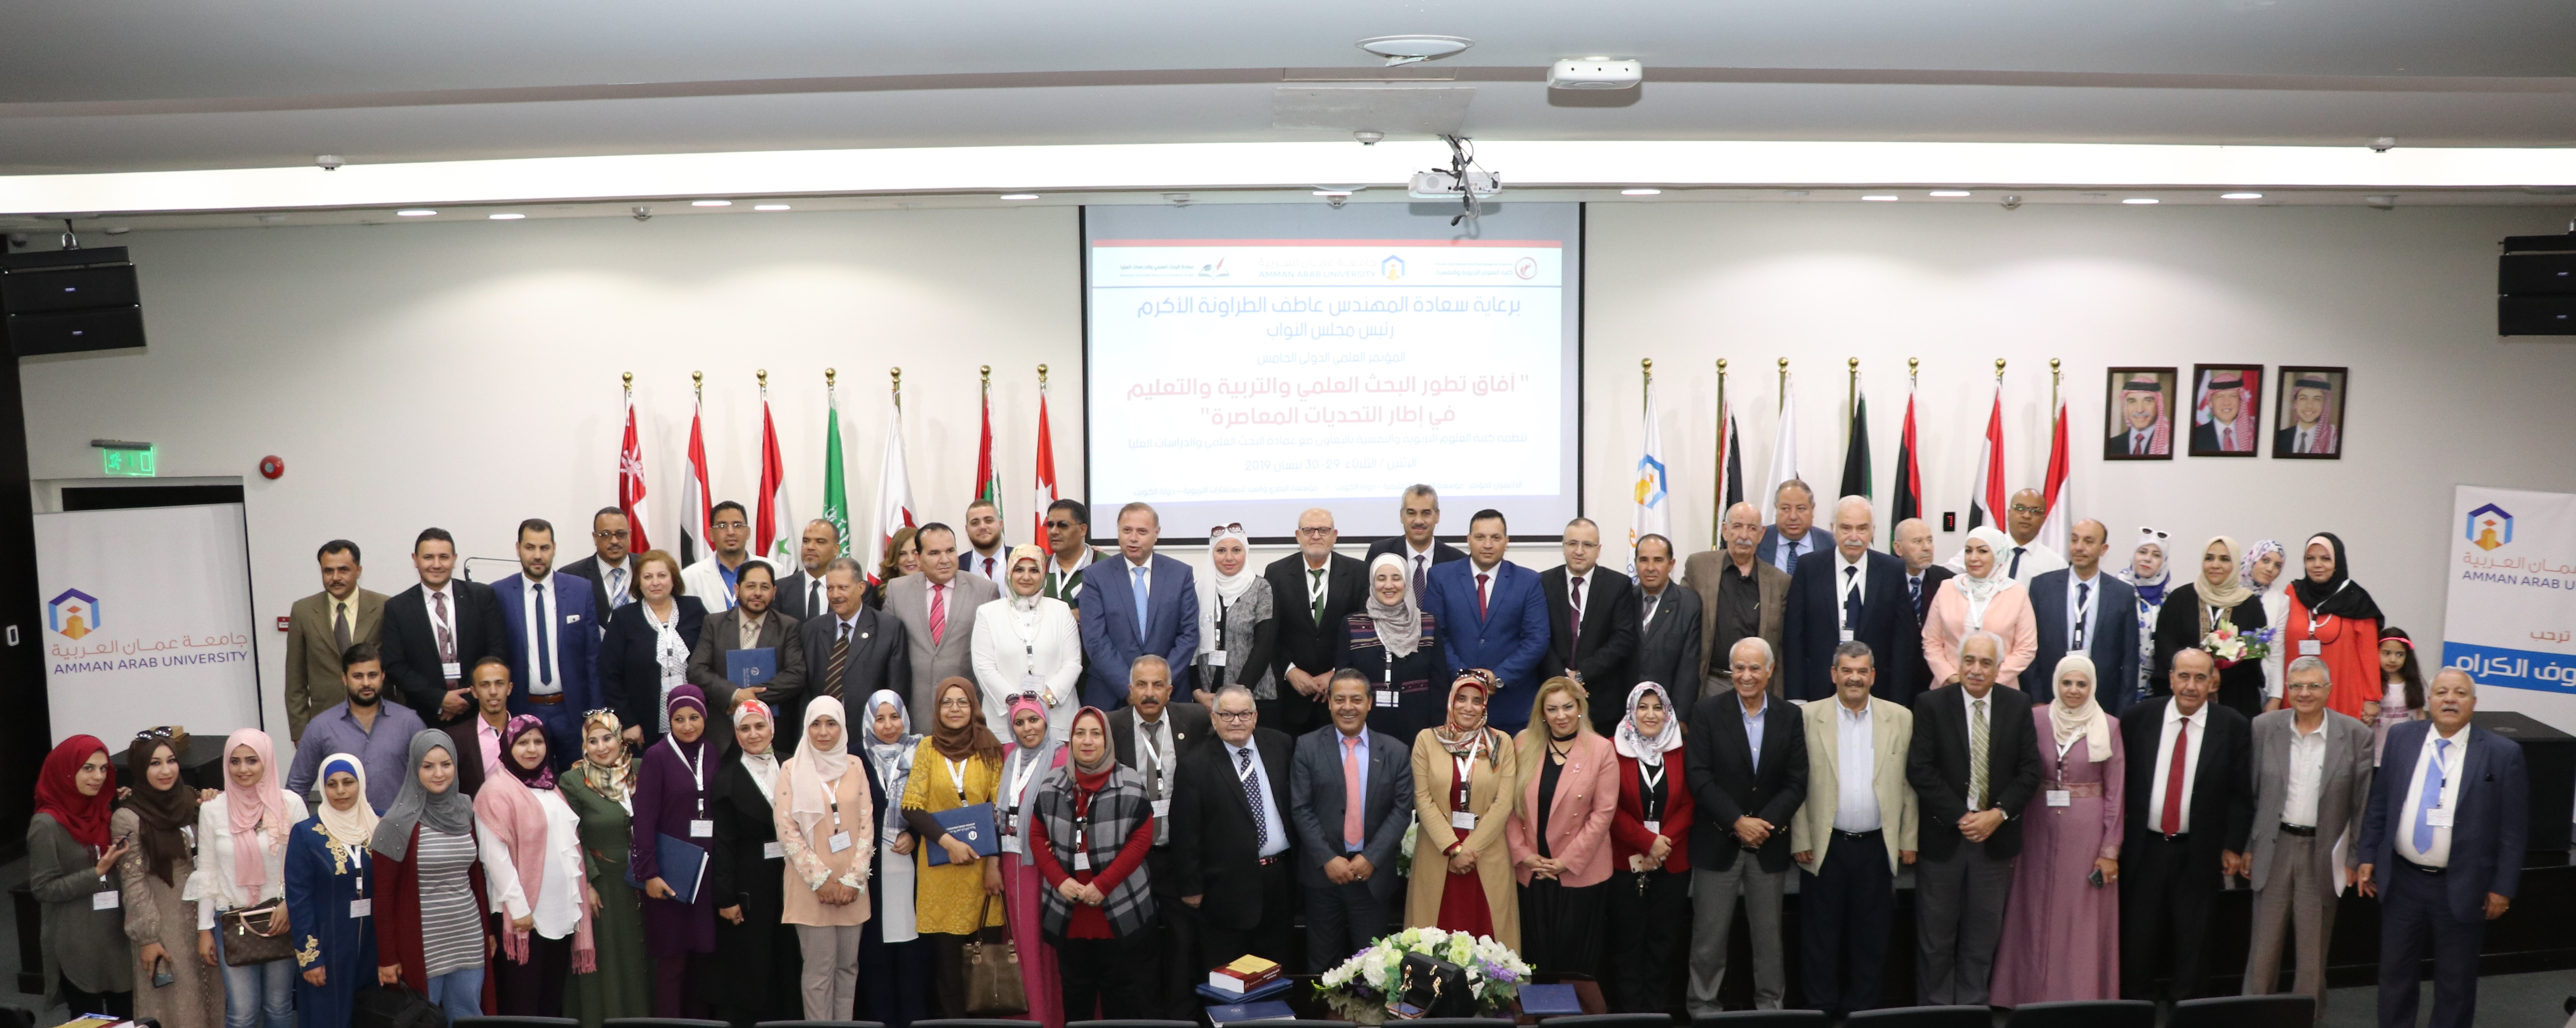  مؤتمر في "عمان العربية" يوصي بضرورة أن تخصص المؤسسات العامة والخاصة تمويلا لدعم البحث العلمي 